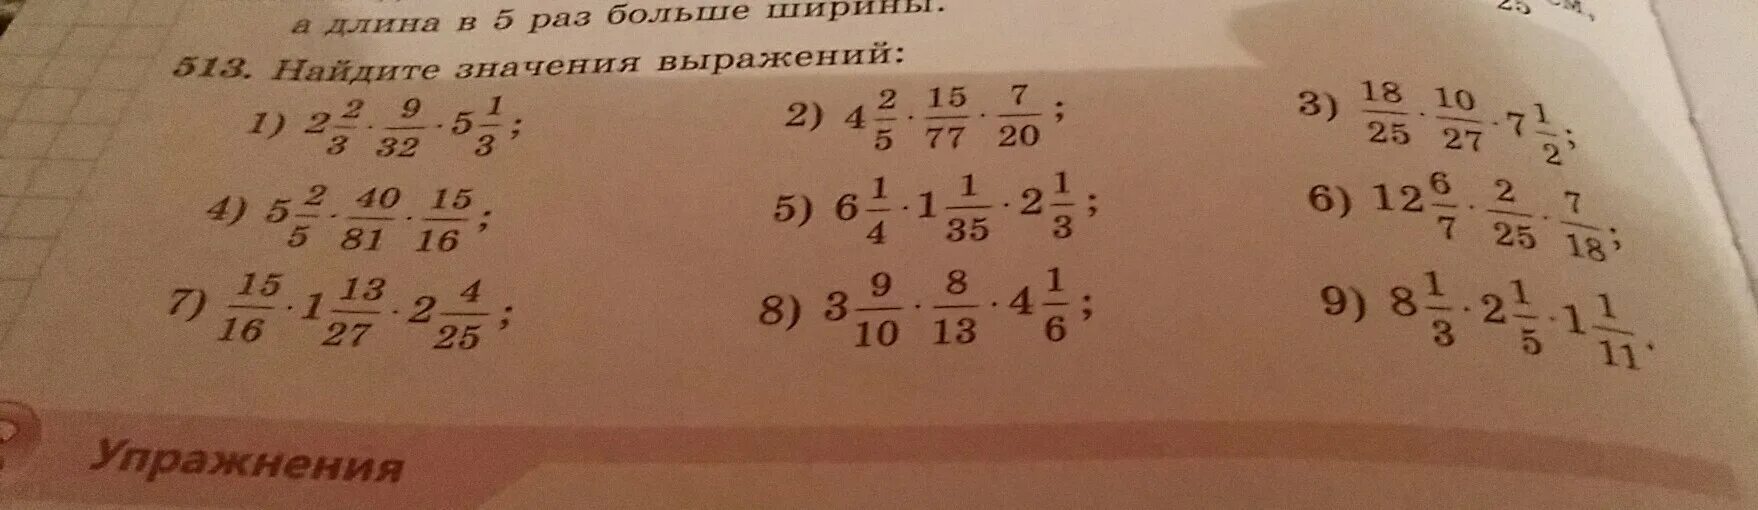 Вычислить значения выражения 1 4 1. Найти значение выражения 4*1/3-1/2. Вычислите 2/25+1/4. Значение выражения 1 1 4 1 1 2. Вычислите 27 1/2 1/9 3/4 4/3.